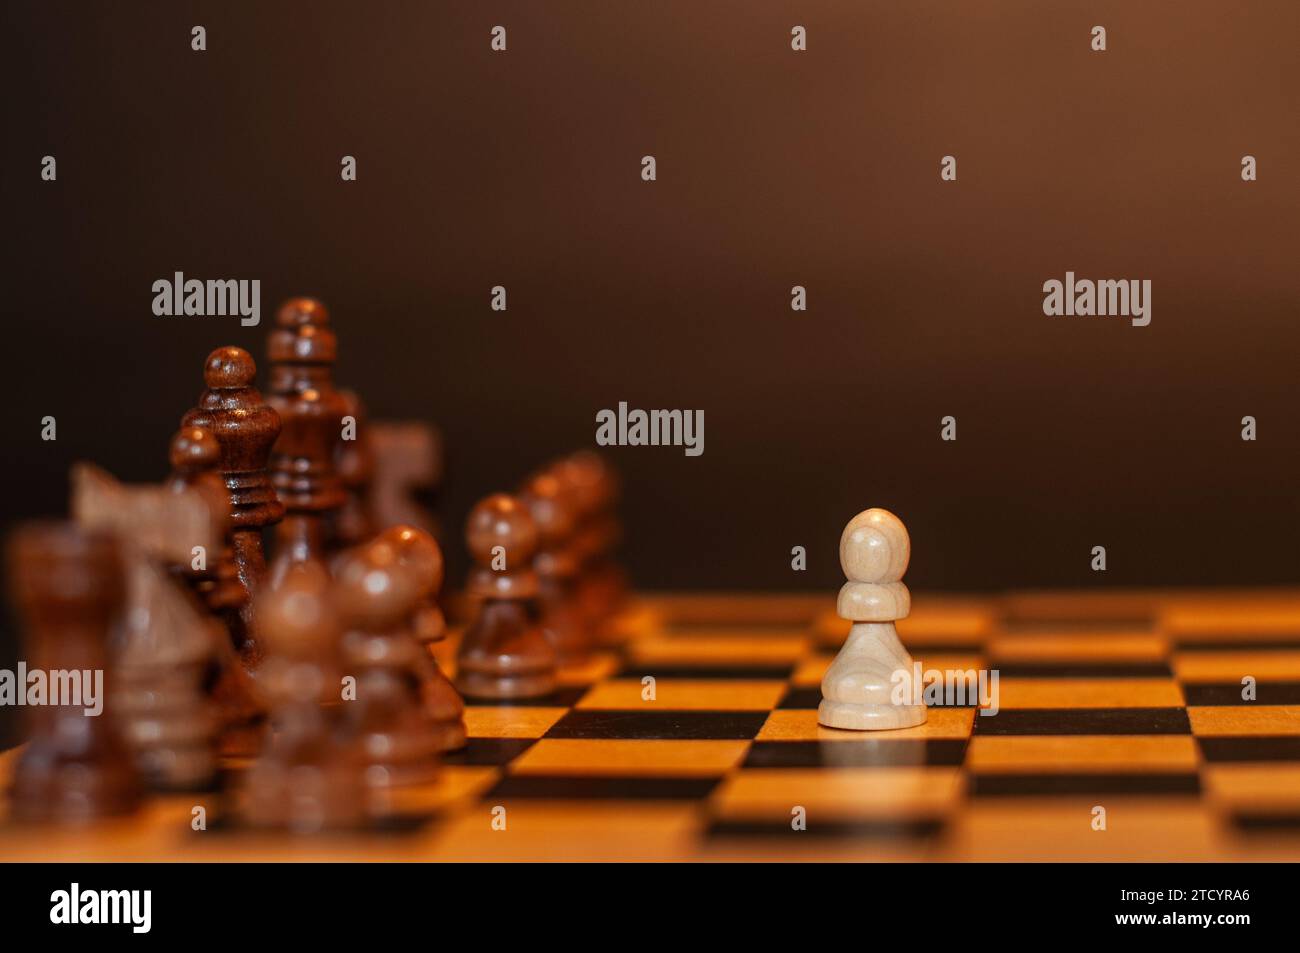 Das Schachspiel beginnt mit der ersten Bewegung des weißen Bauern, der sich zwei Schritte vorwärts bewegt, fotografiert mit einem dunklen Hinterteil Stockfoto